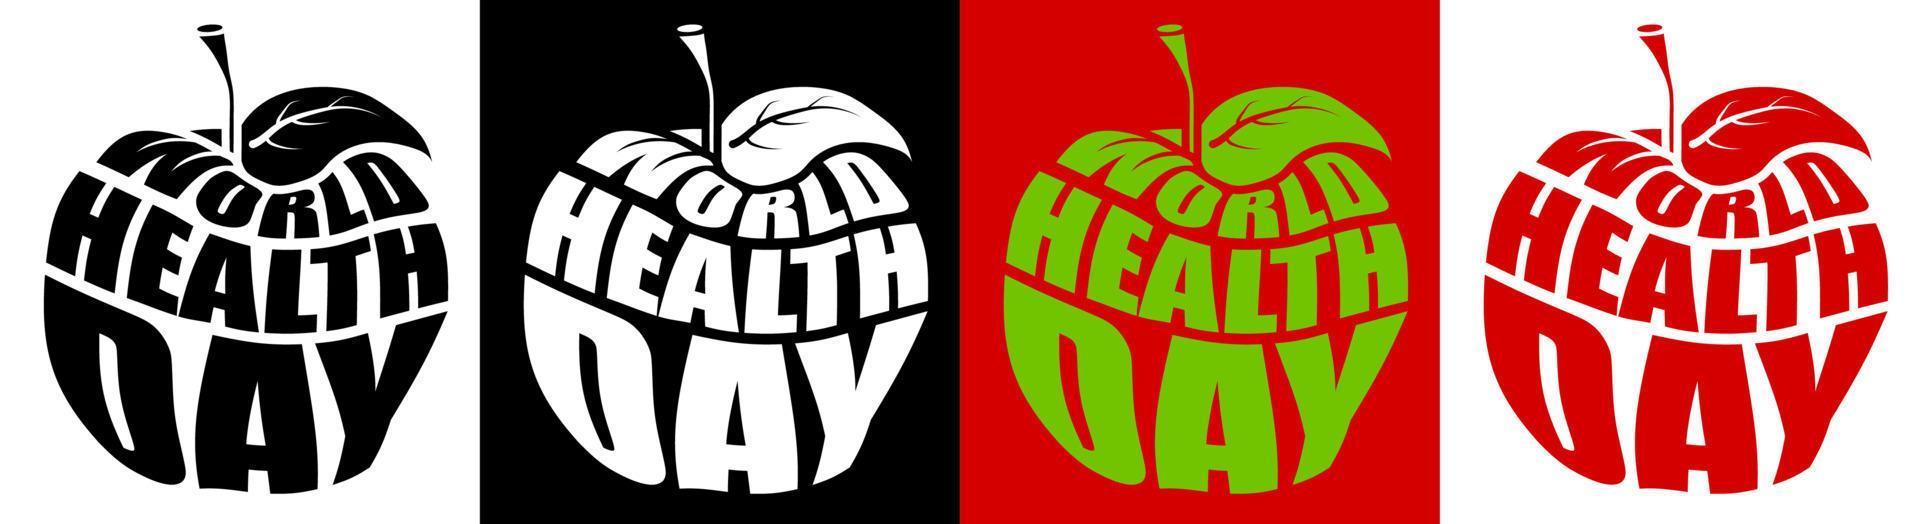 inscrição decorativa do dia mundial da saúde em forma de maçã. letras. estilo de vida saudável e vegetarianismo. vetor